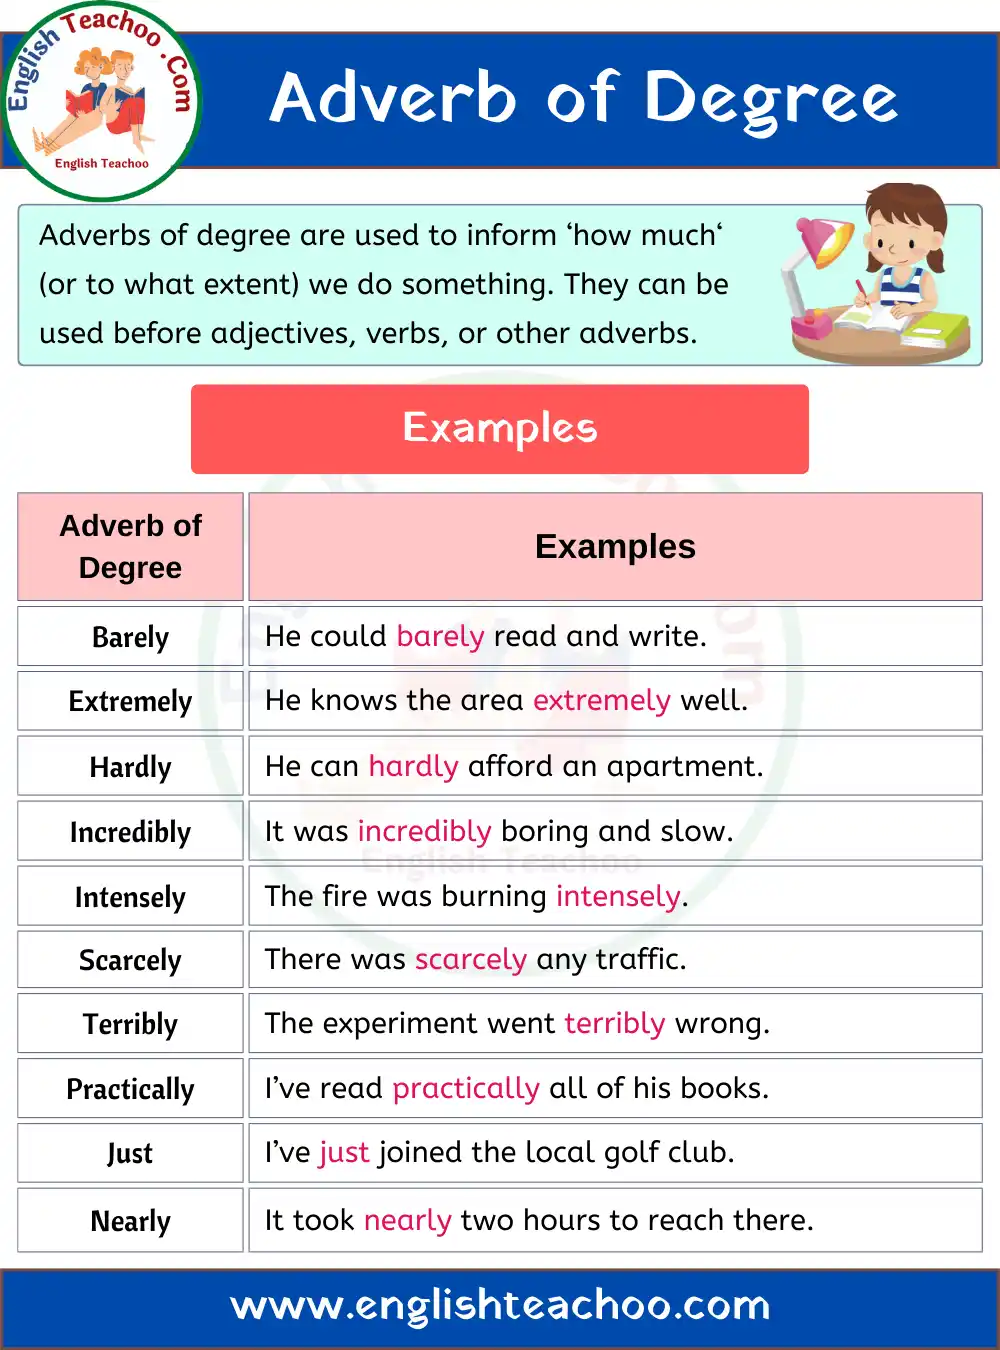 adverb-of-degree-english-grammar-englishteachoo